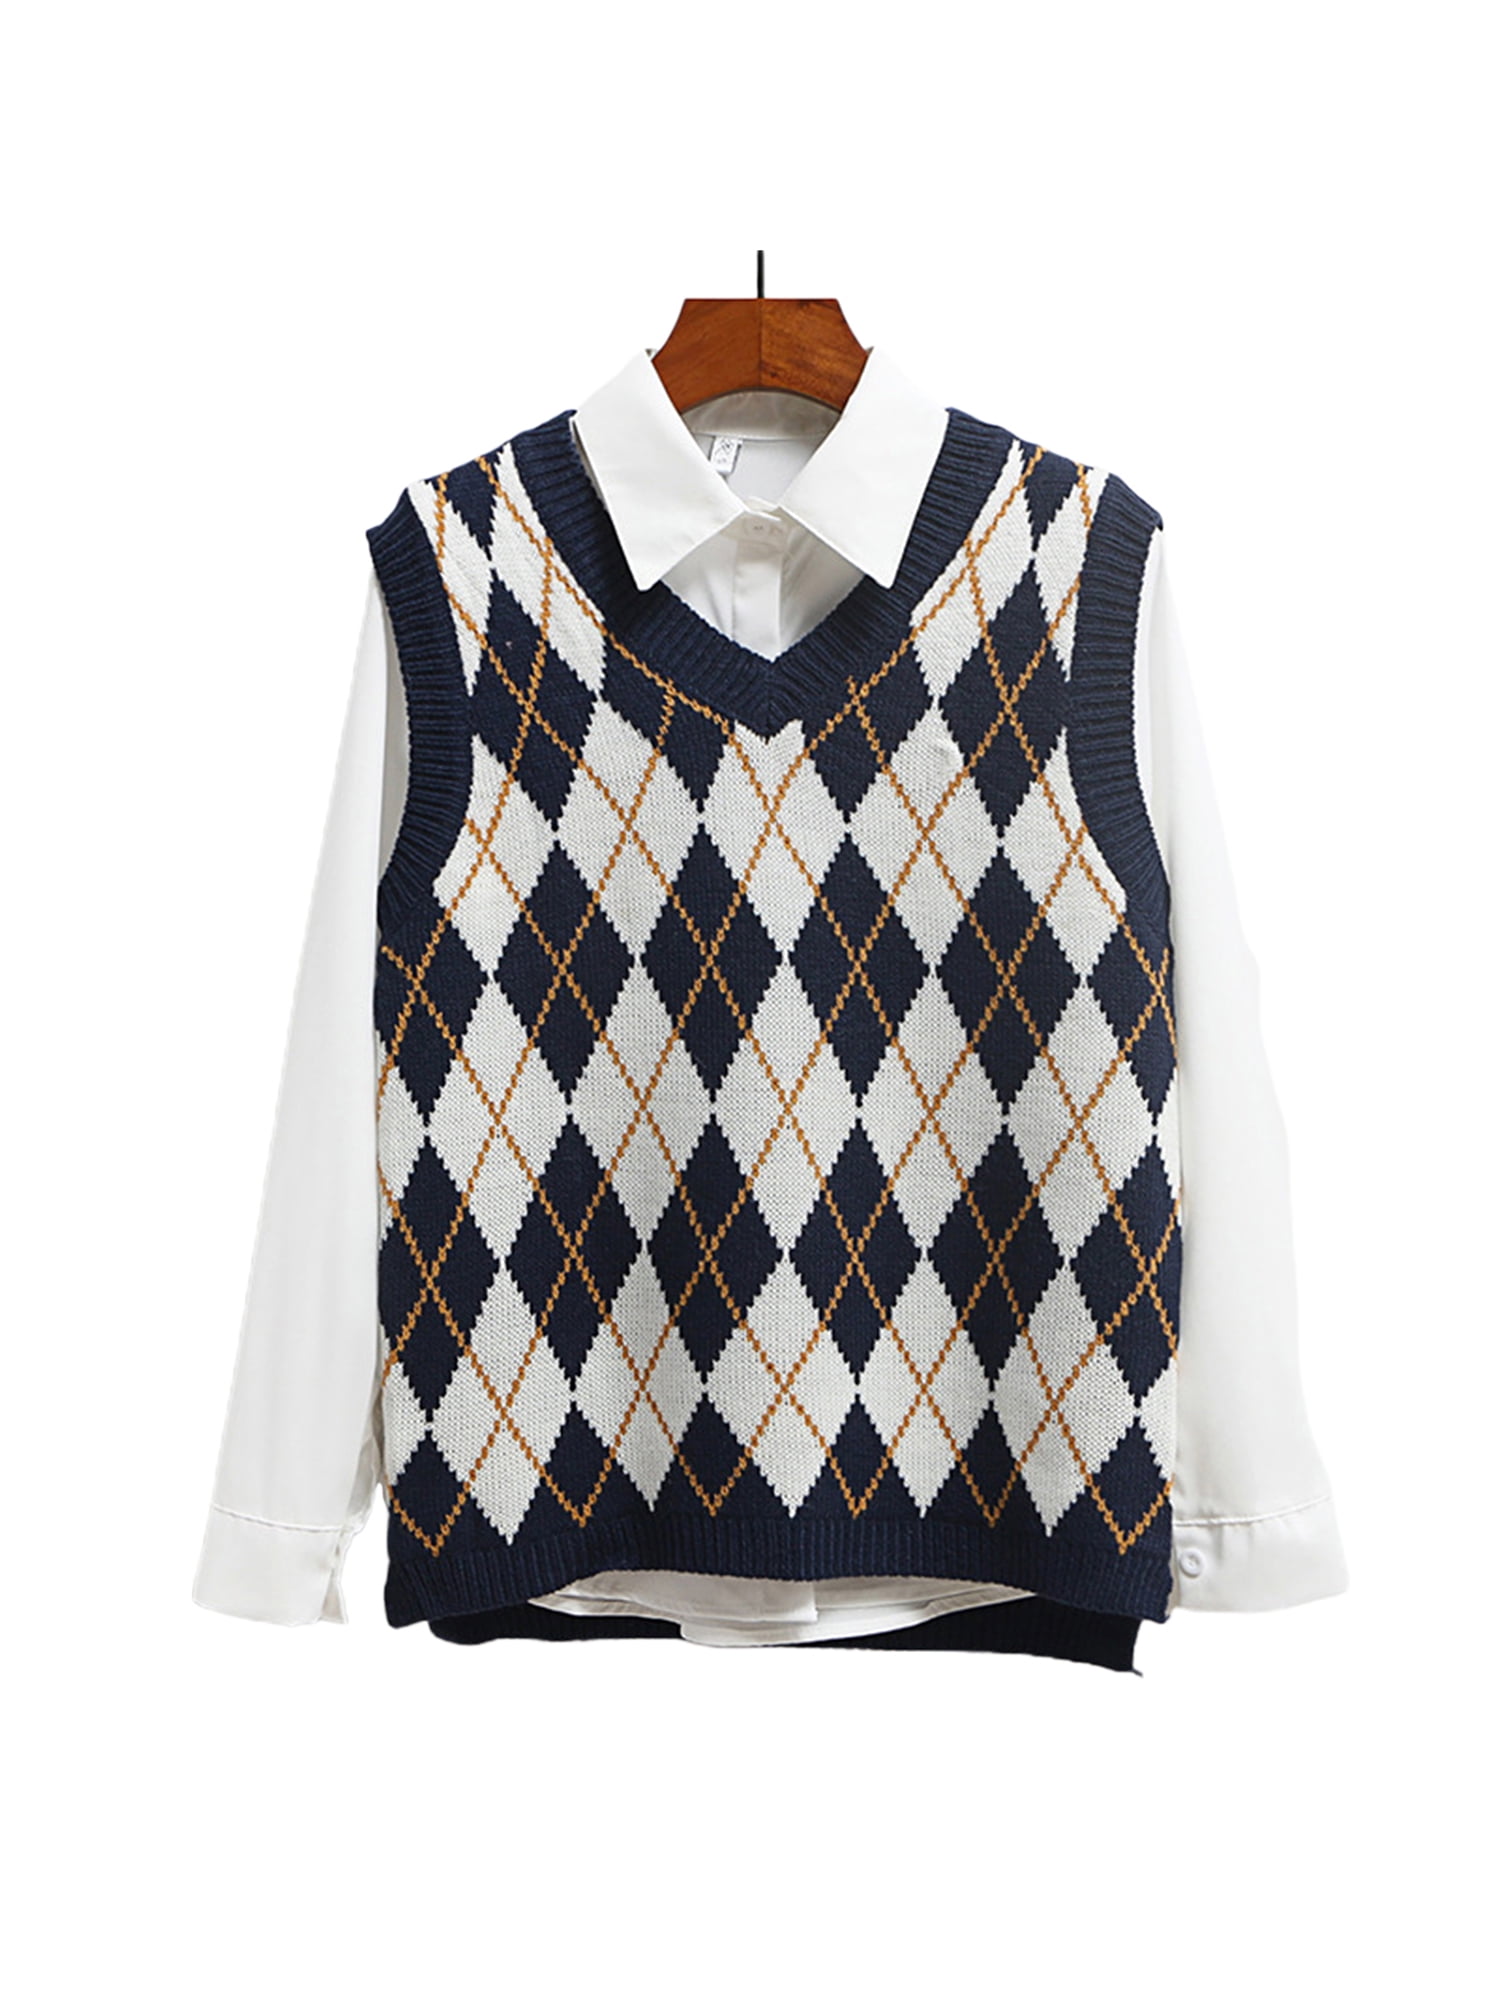 Women Y2K Knit Sweater Vest Tie Dye Tank Top Sleeveless Crop Knitwear Tank E-Girls 90s Streetwear